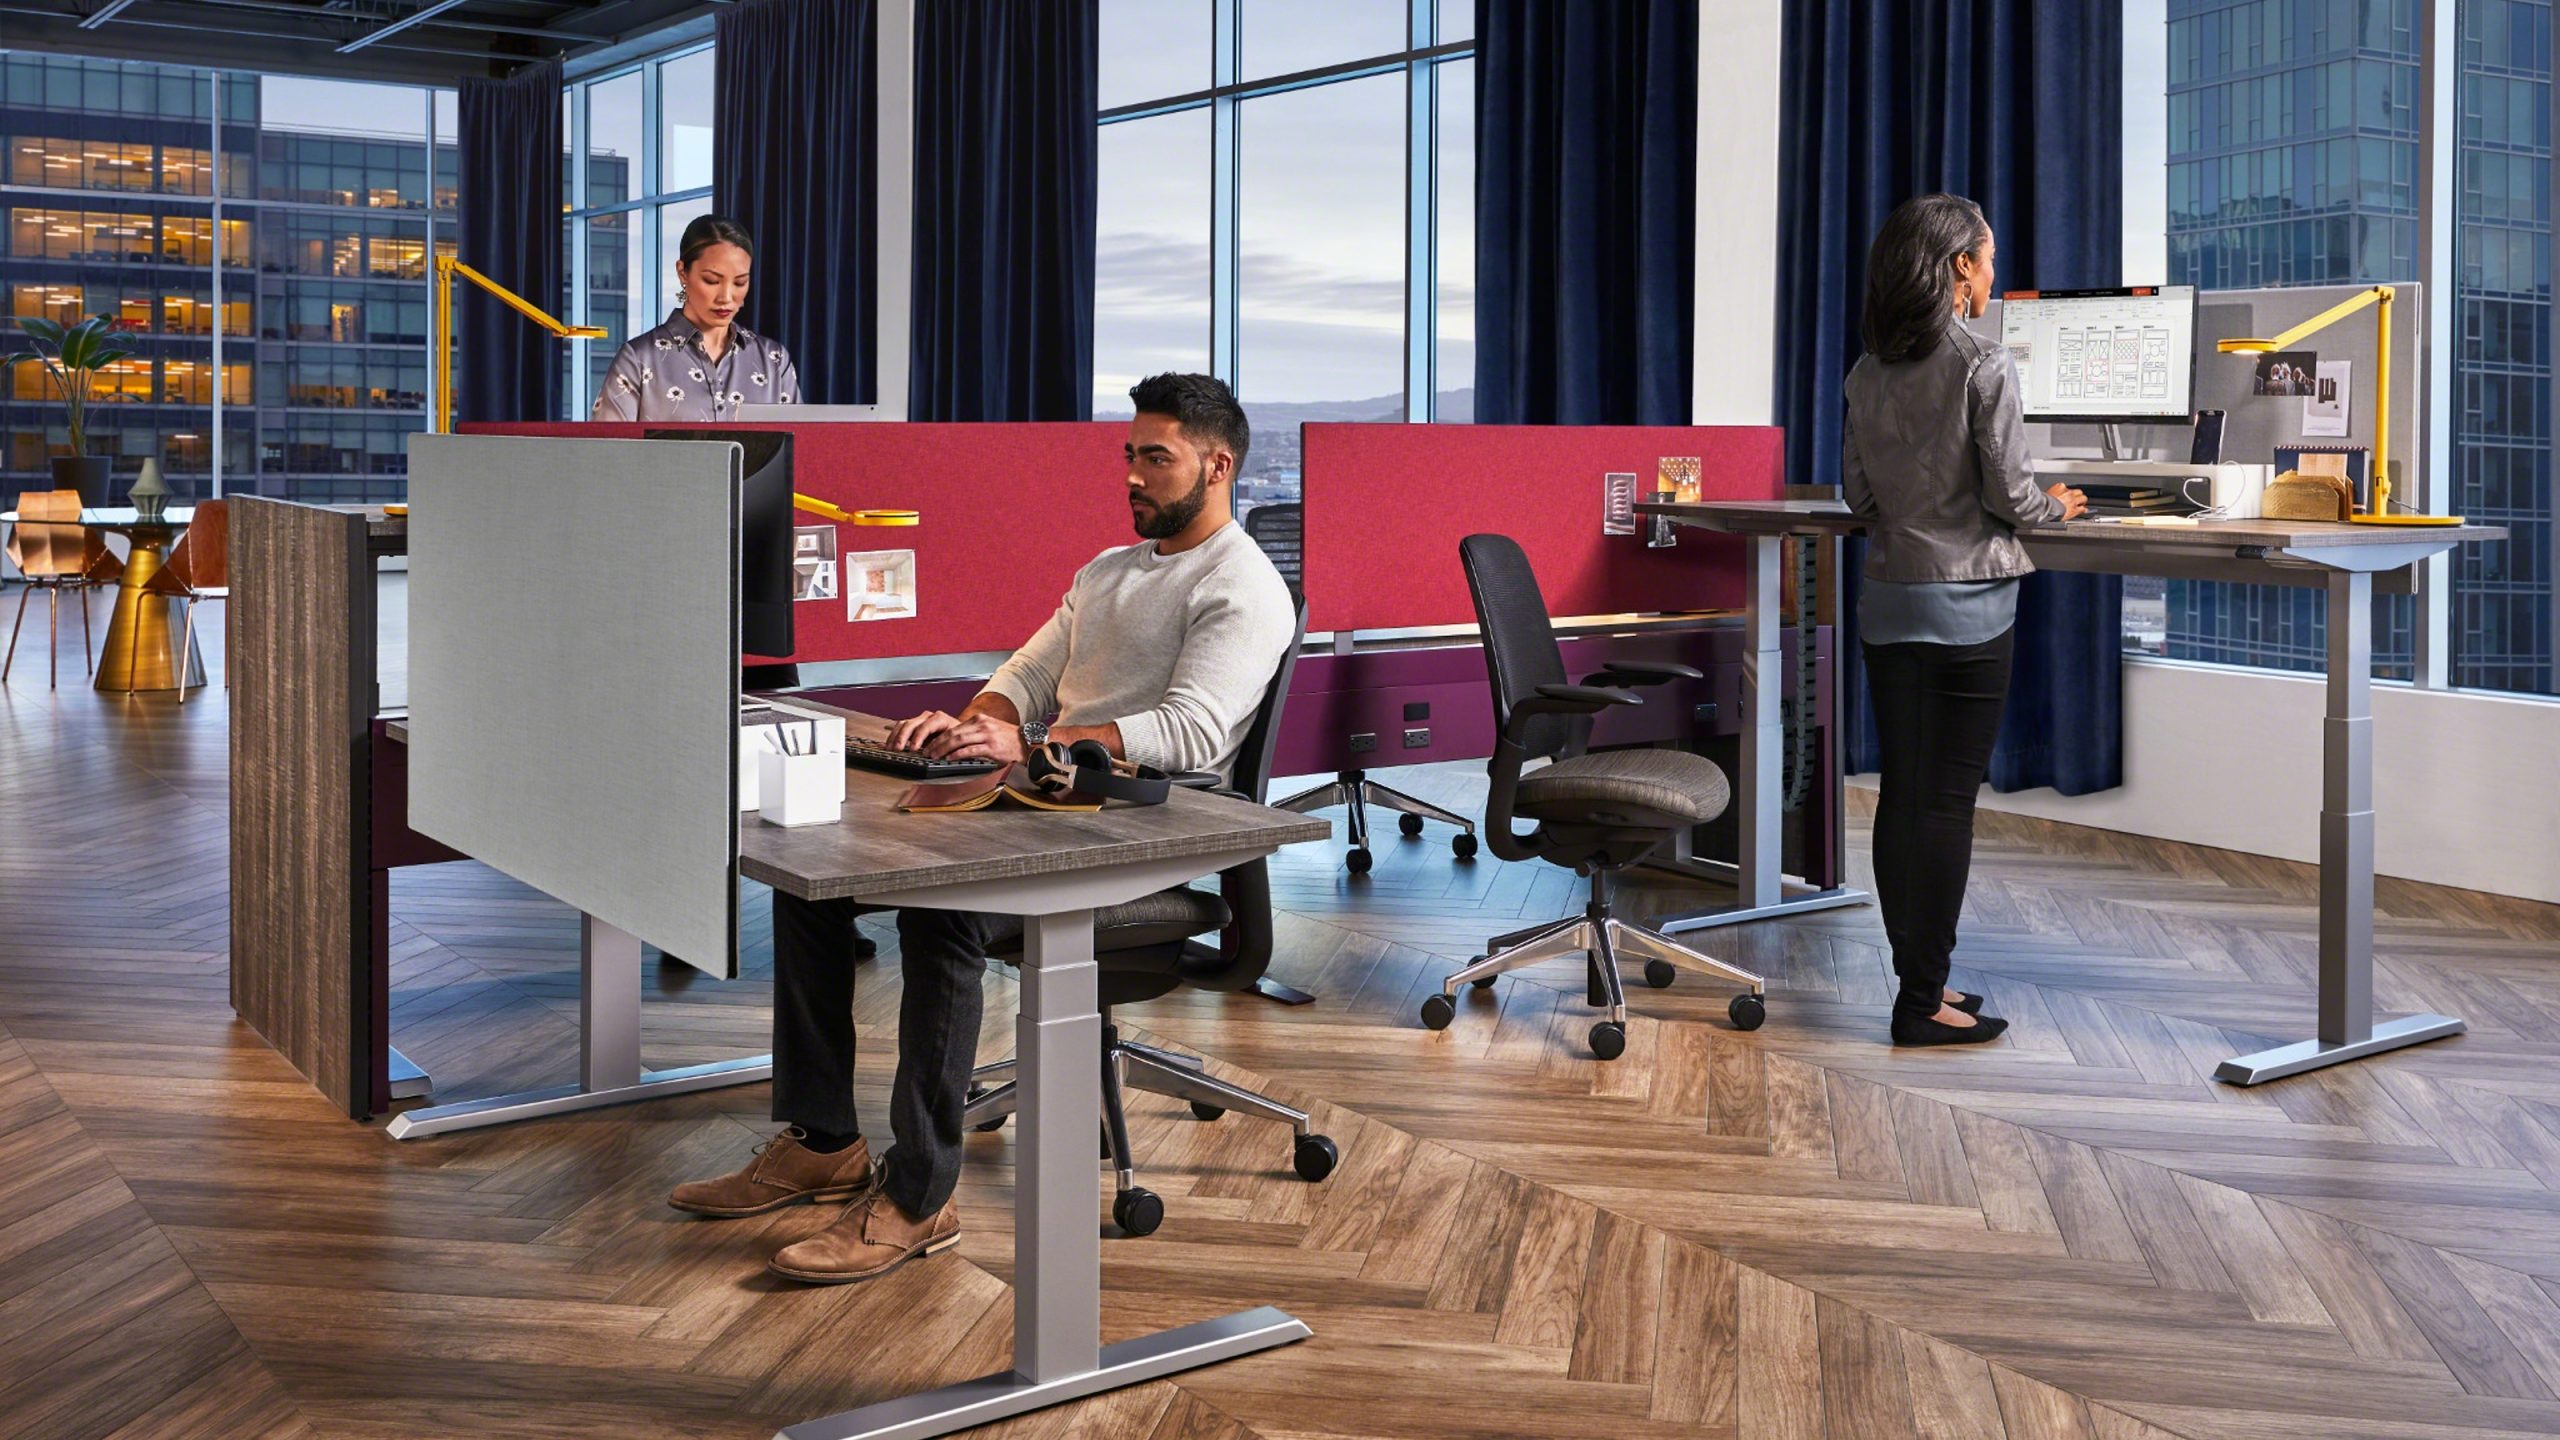 Migration height-adjustable desks